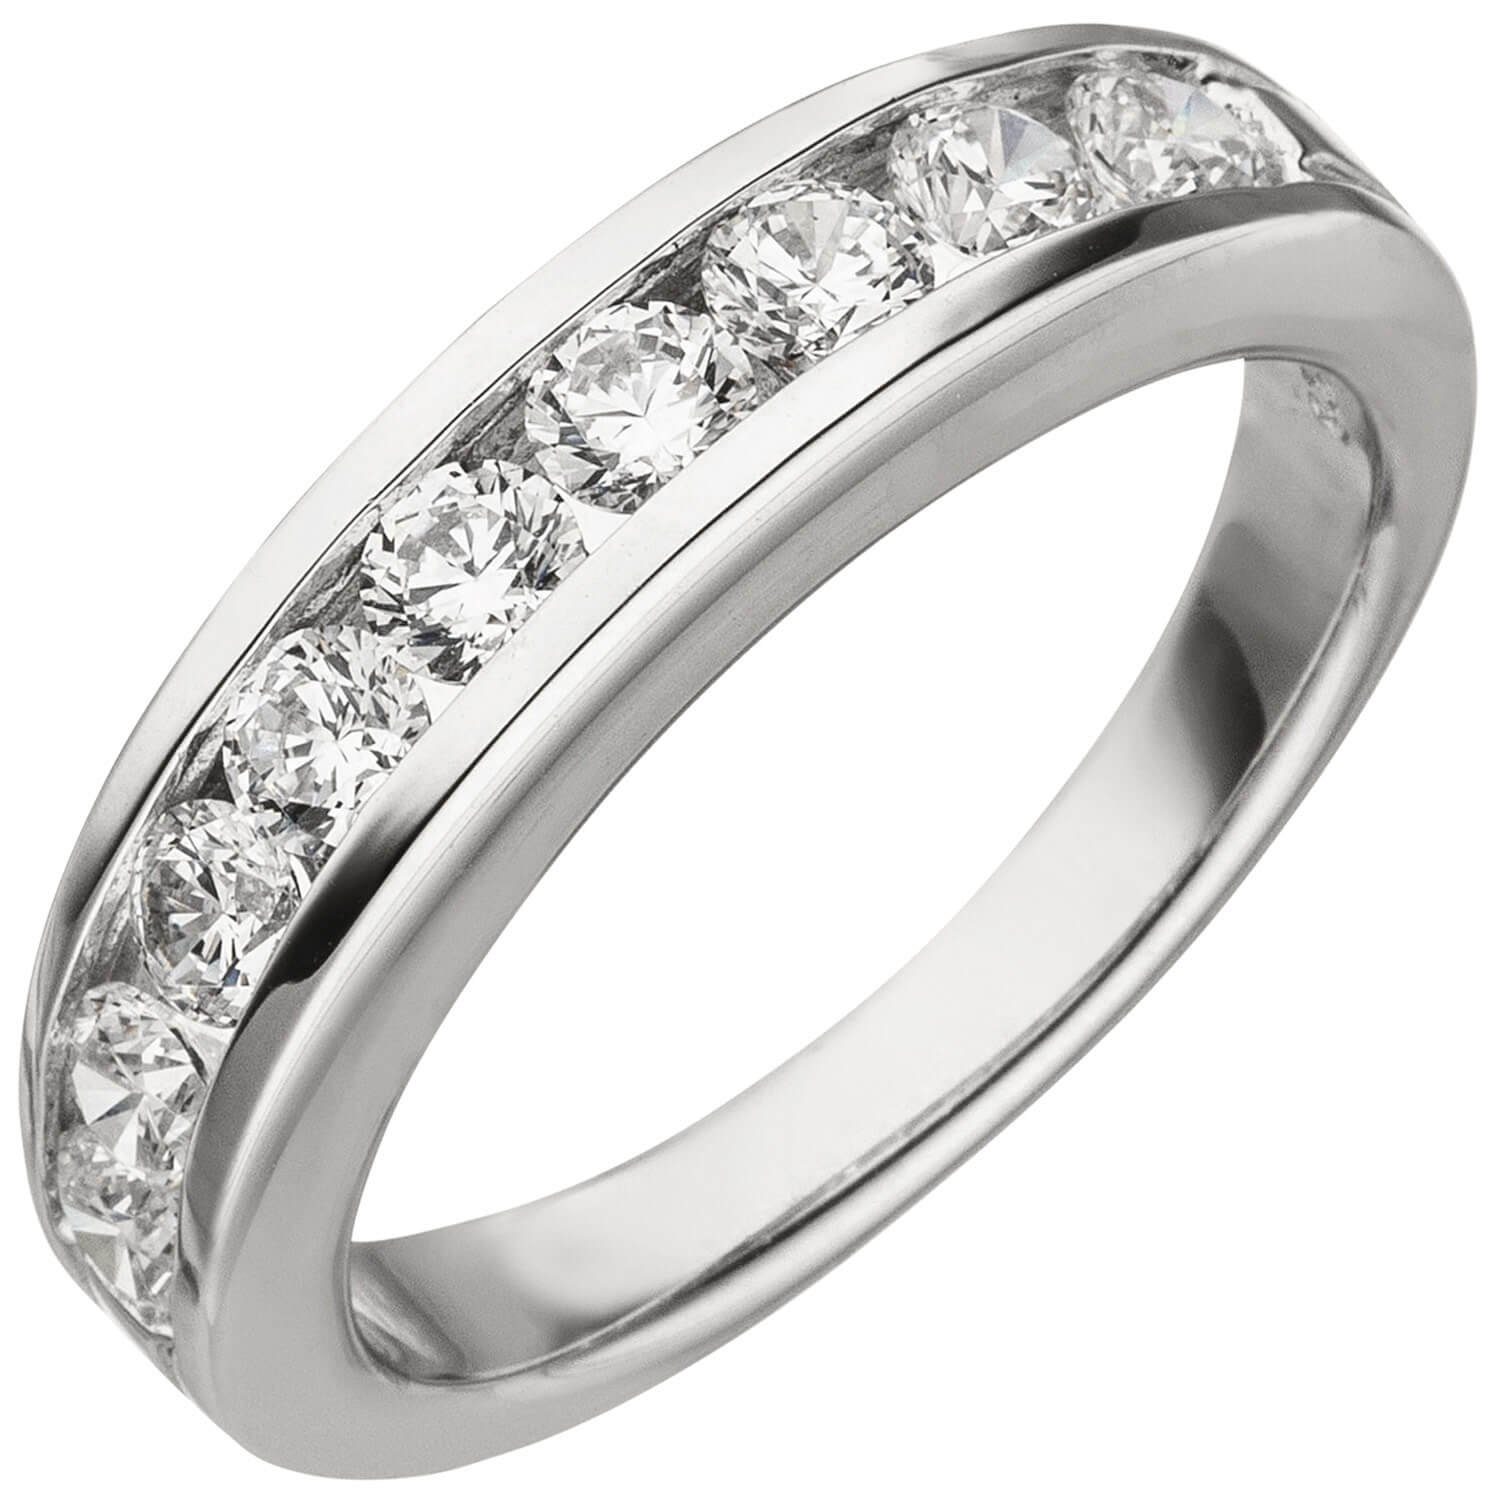 Schmuck Krone Silberring Ring Damenring mit weißen Zirkonia 925 Silber Fingerschmuck, Silber 925